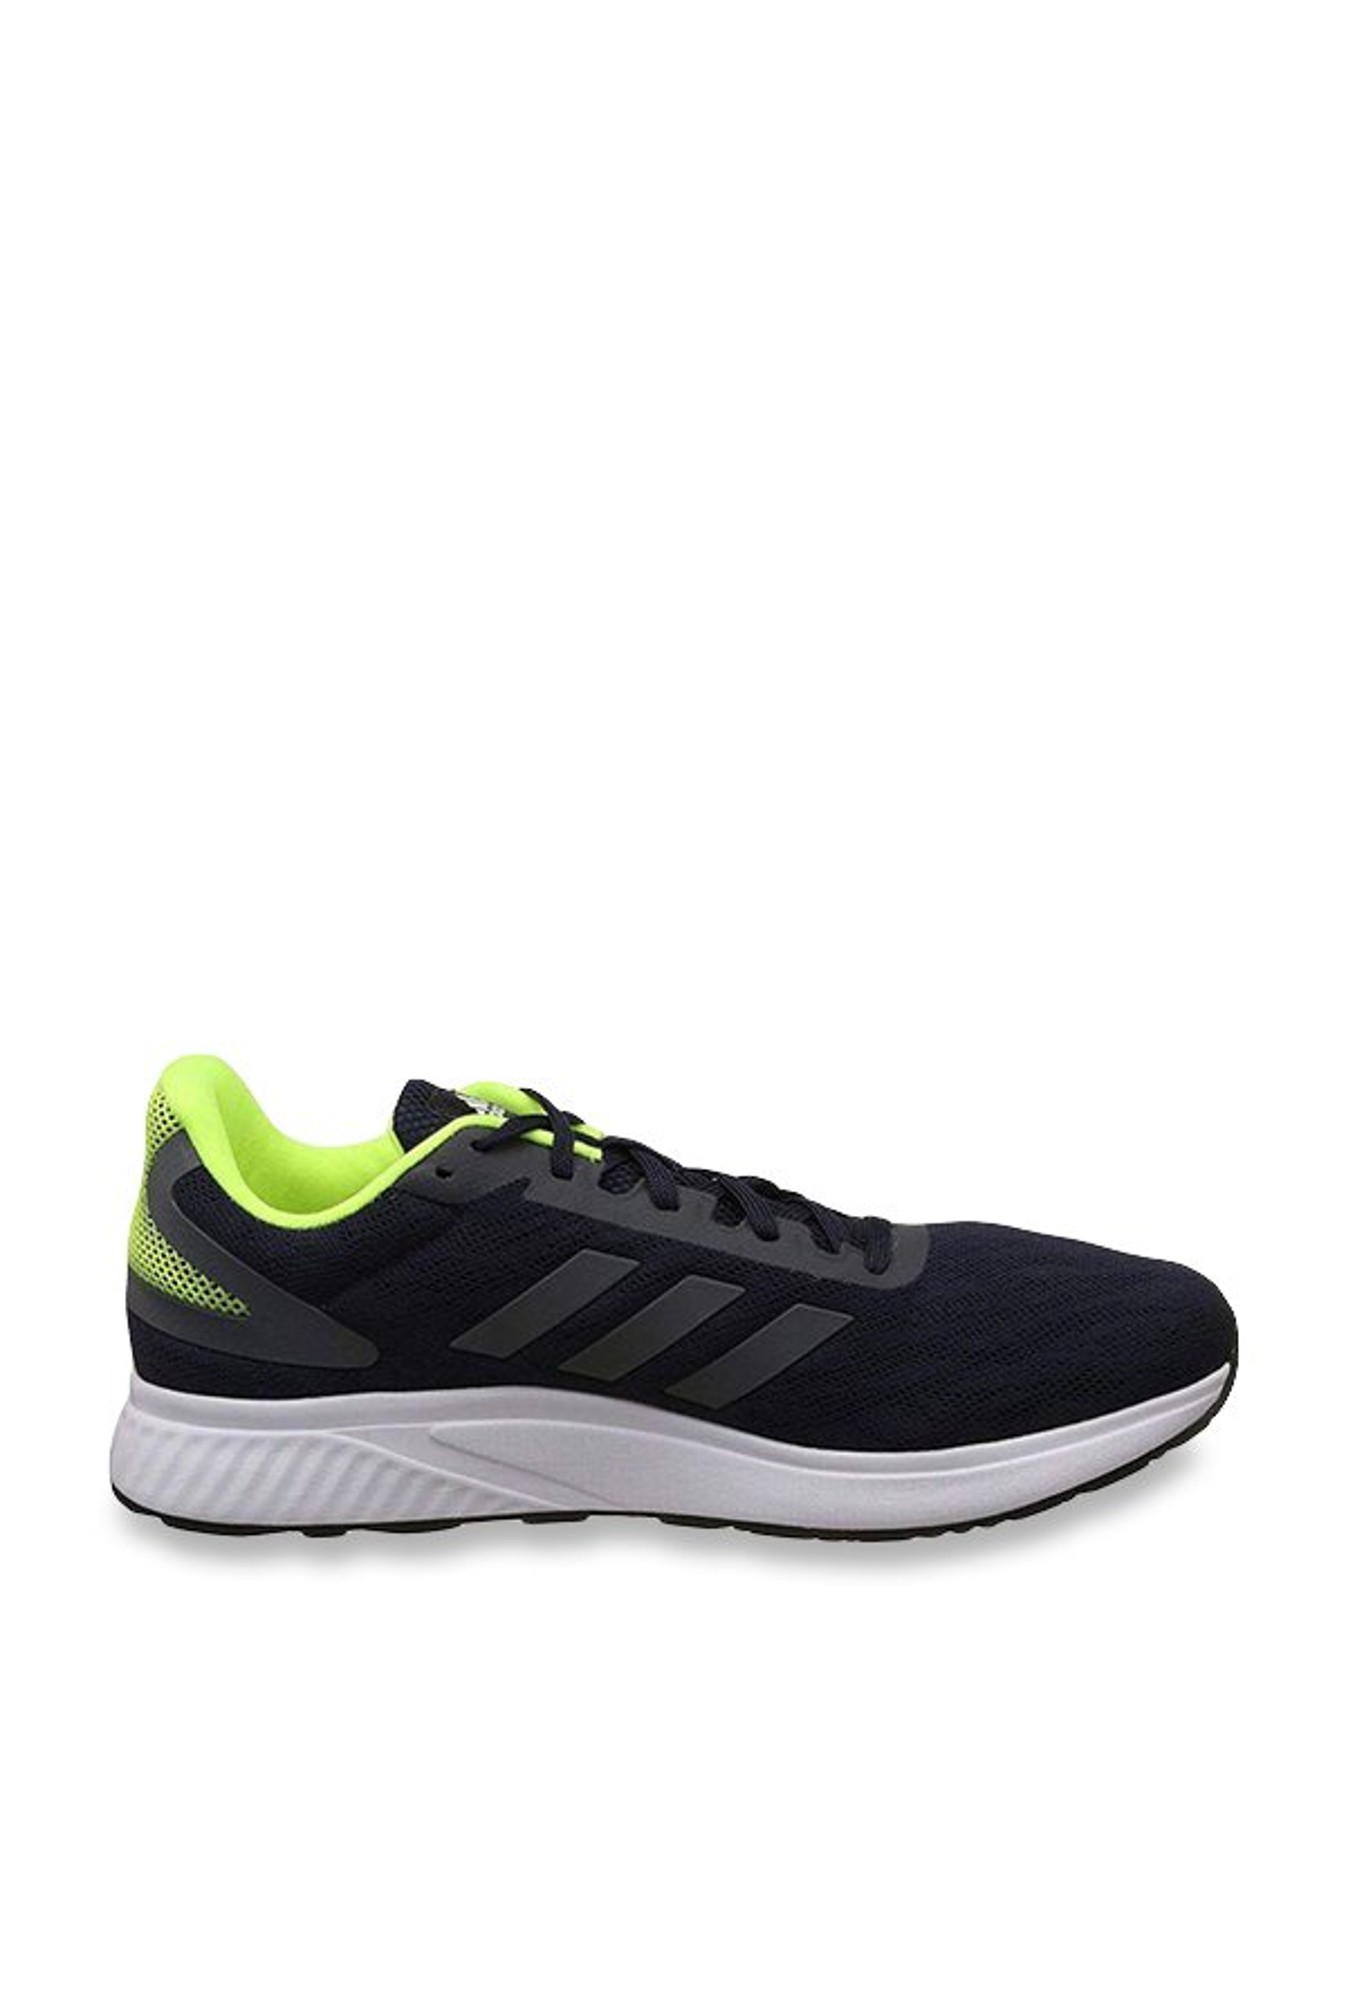 Buy Adidas Kalus M Black Running Shoes 